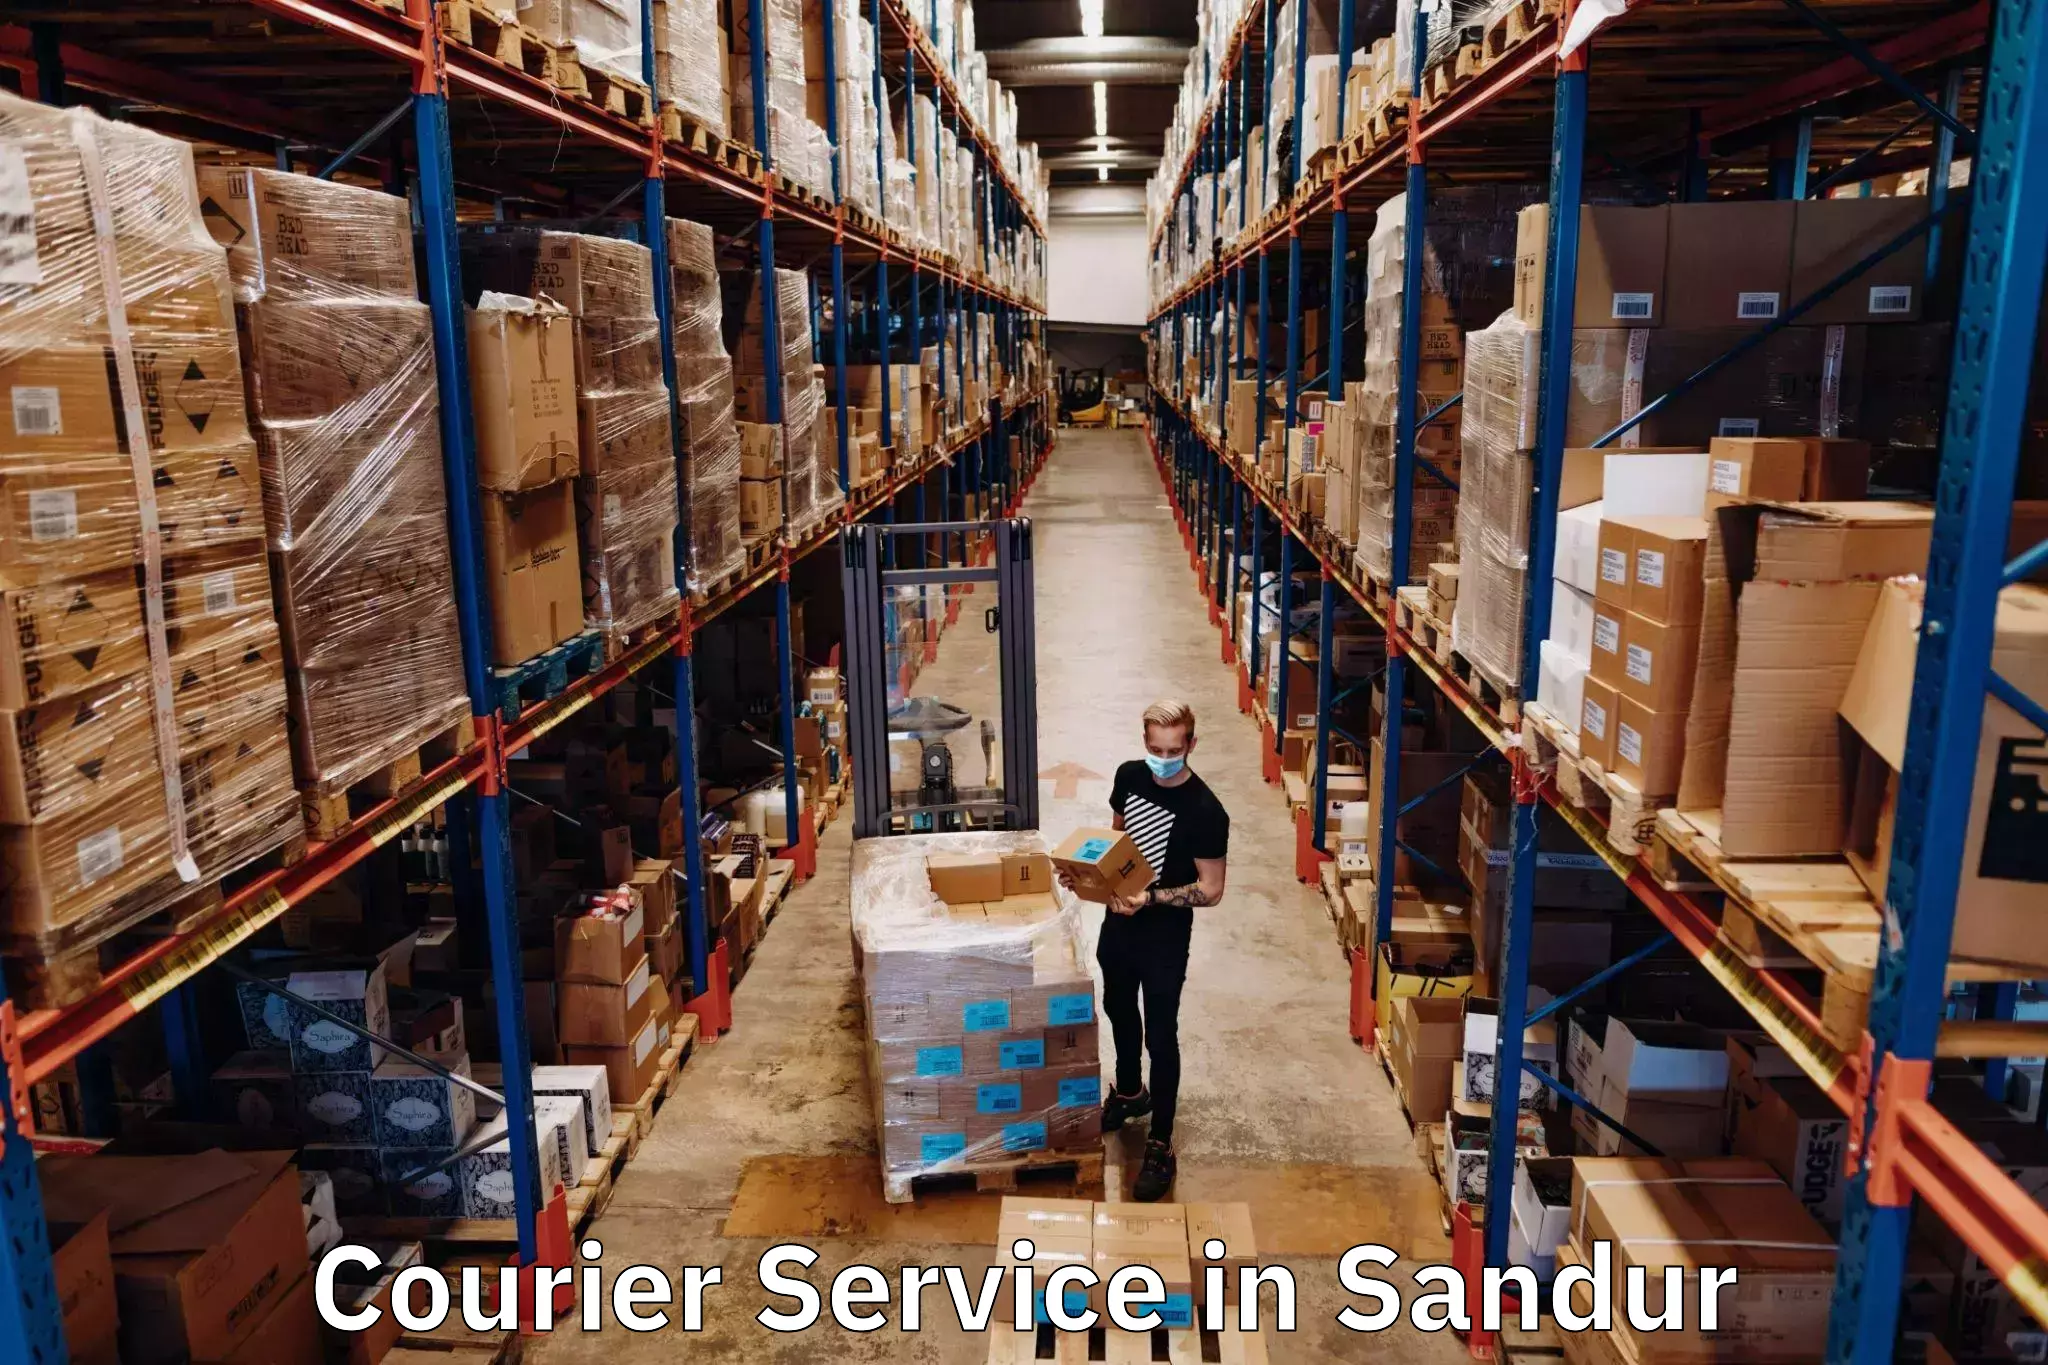 Secure packaging in Sandur